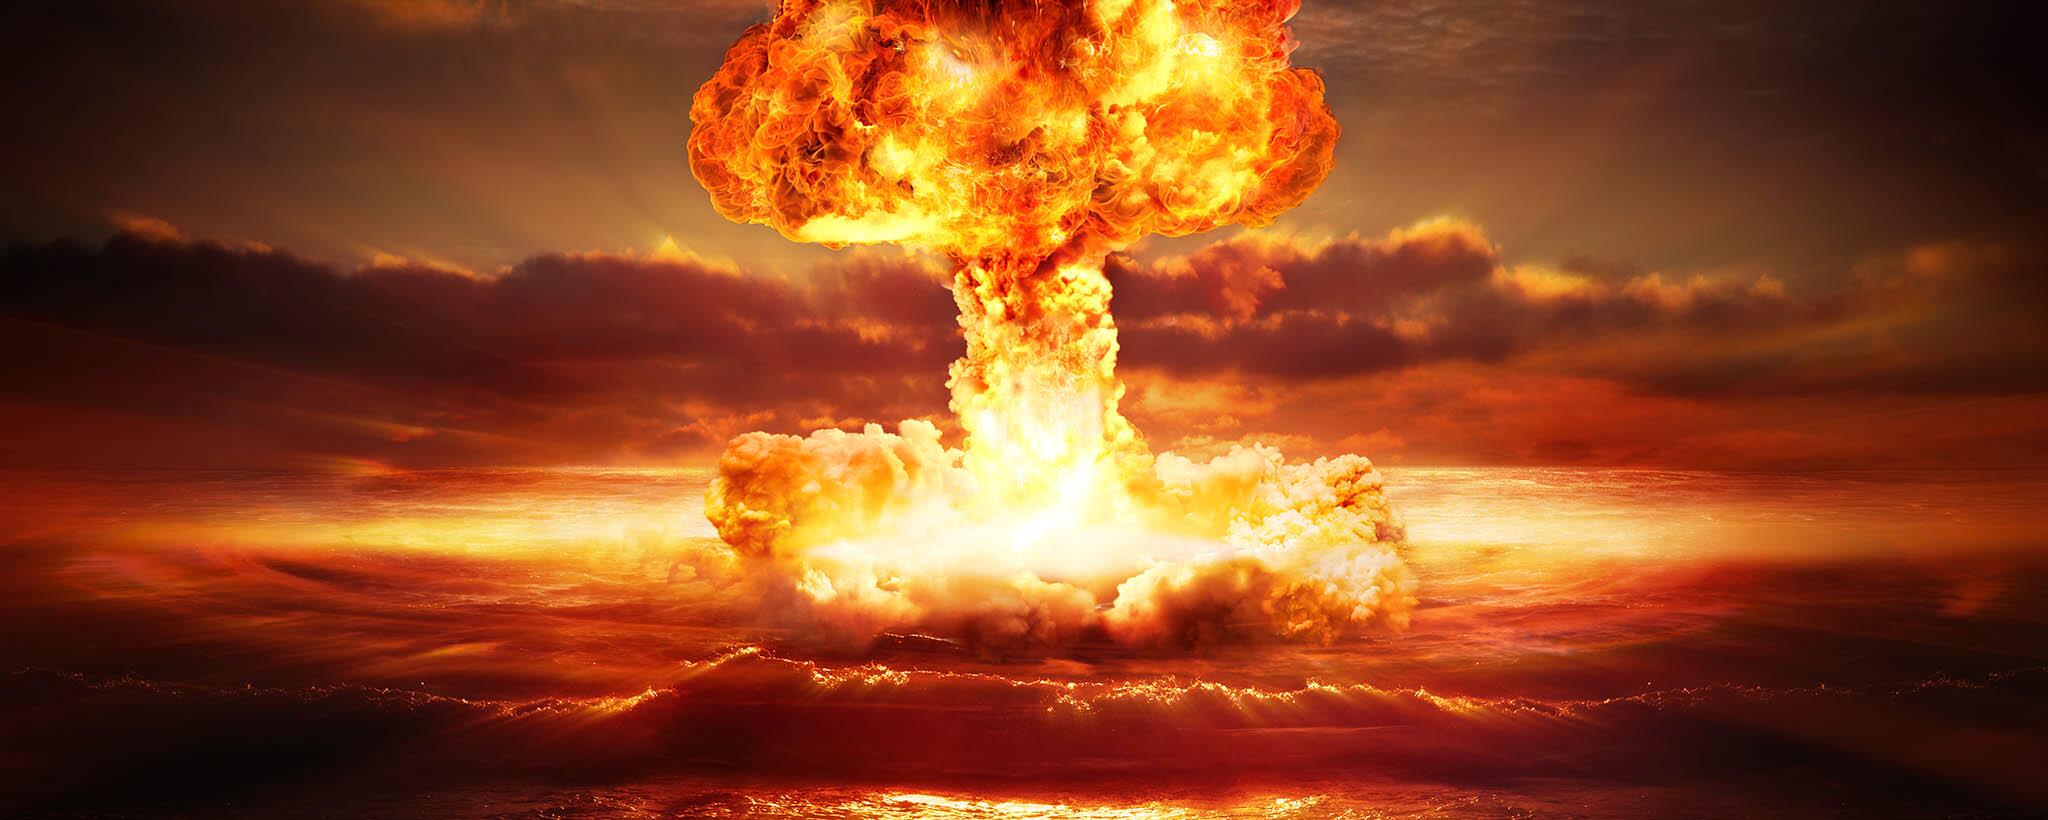 Pictures Of Nuke Explosion - KibrisPDR